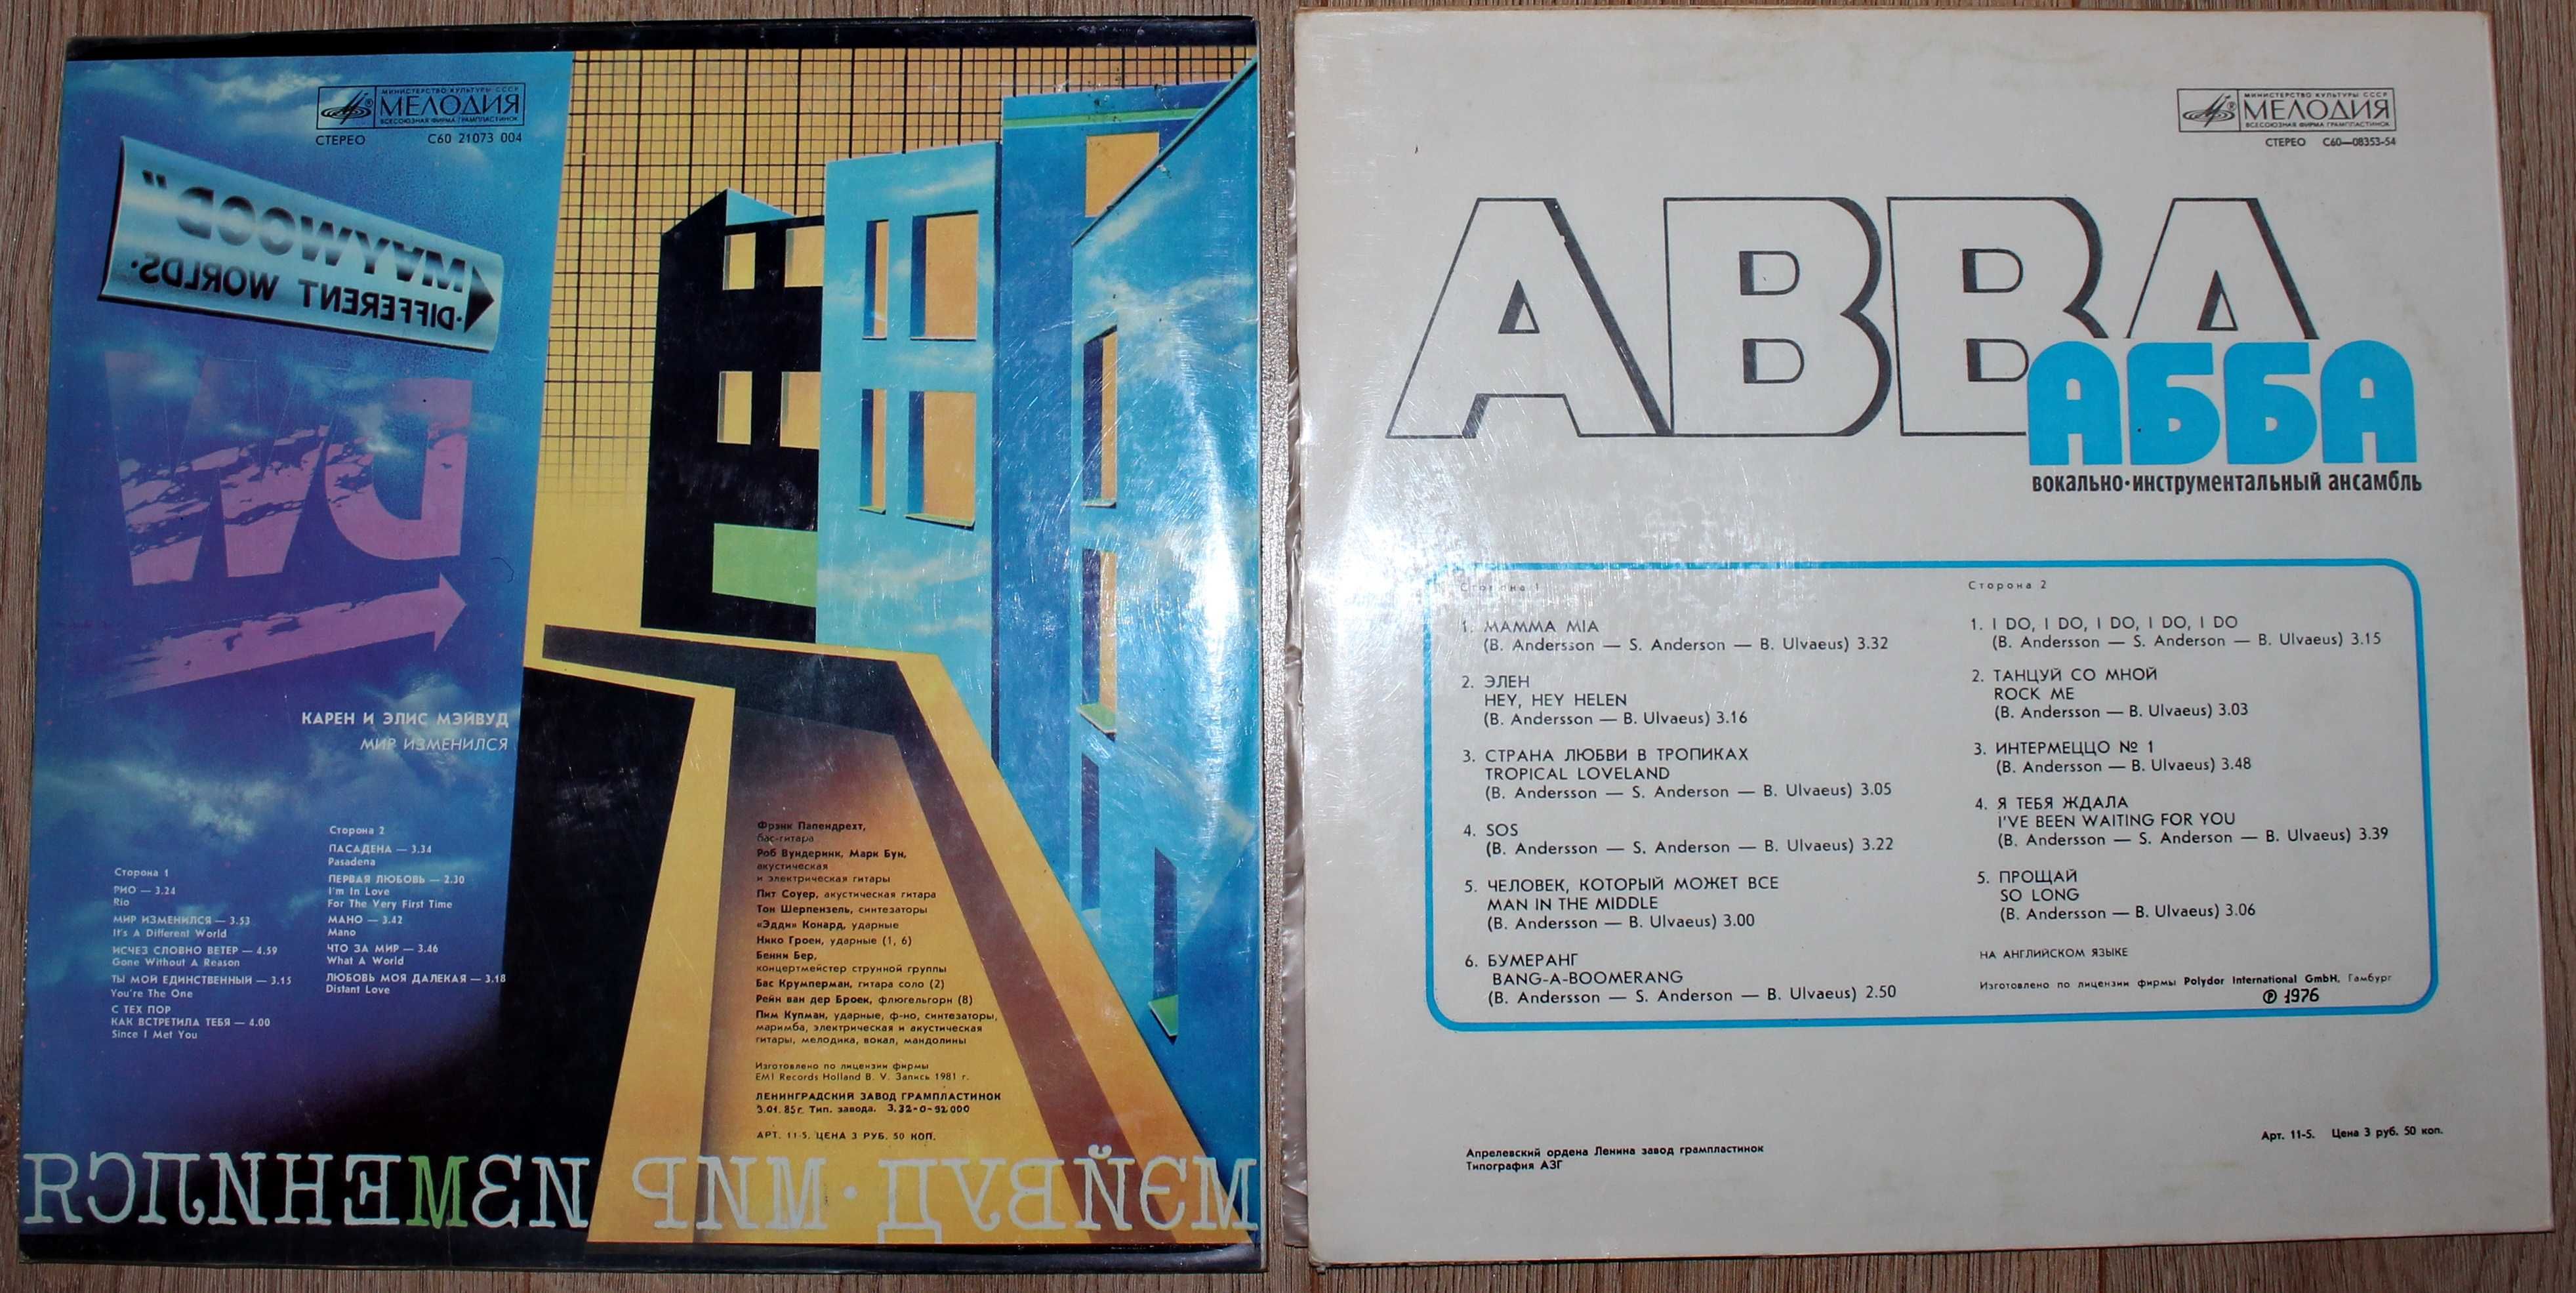 Вінілові платівки - ABBA - 1975, Maywood - 1981